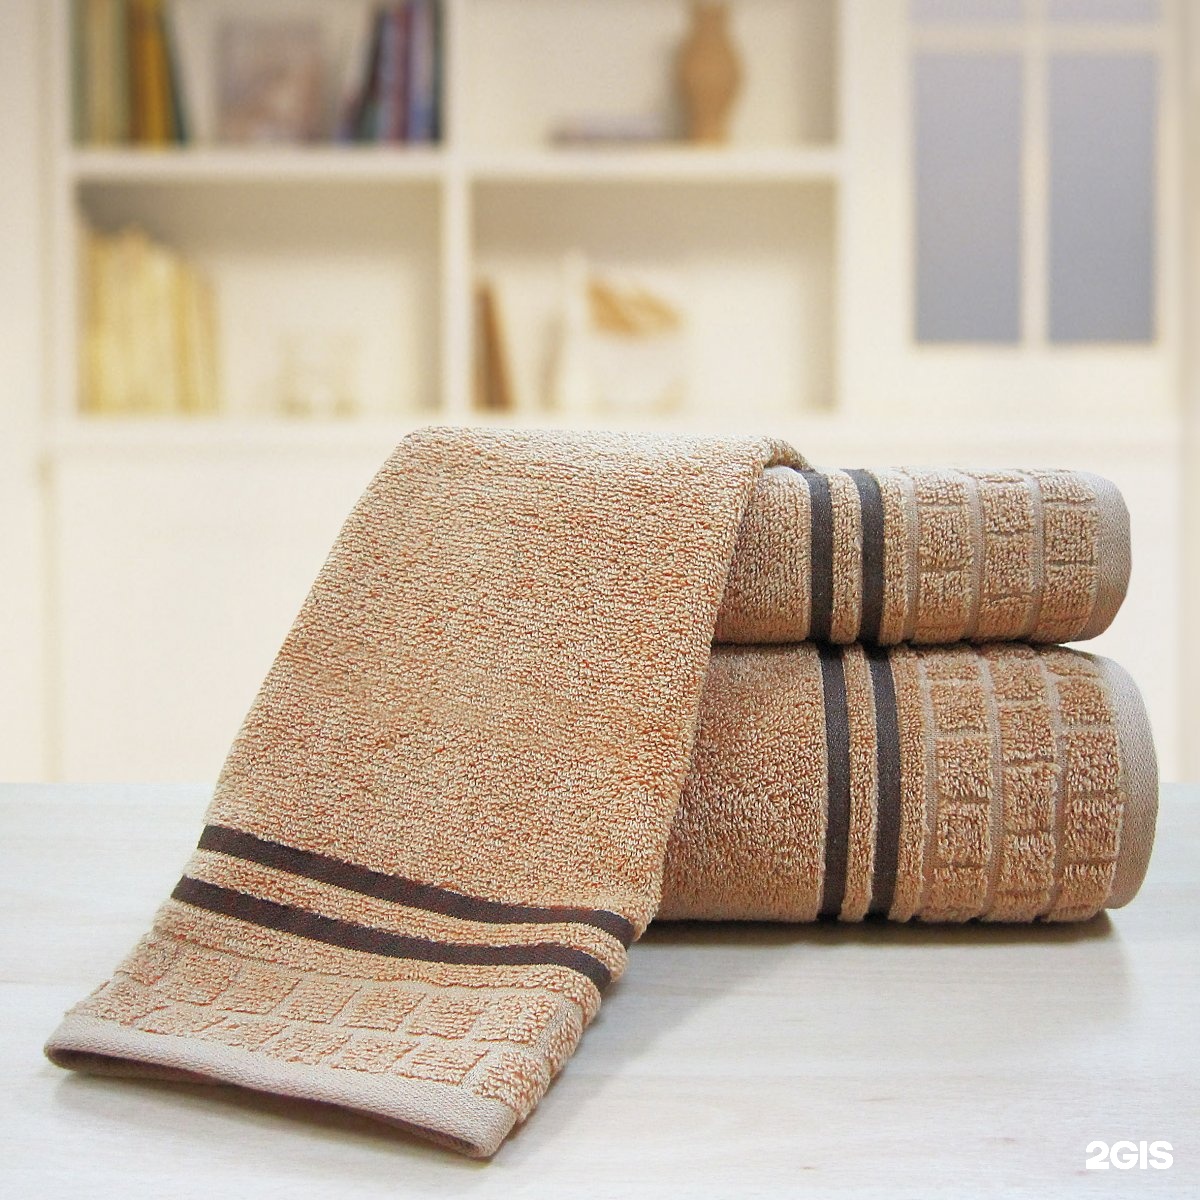 Купить банные полотенца лучшего качества. Банное полотенце. Полотенце махровое. Красивые банные полотенца. Марлевое полотенце.